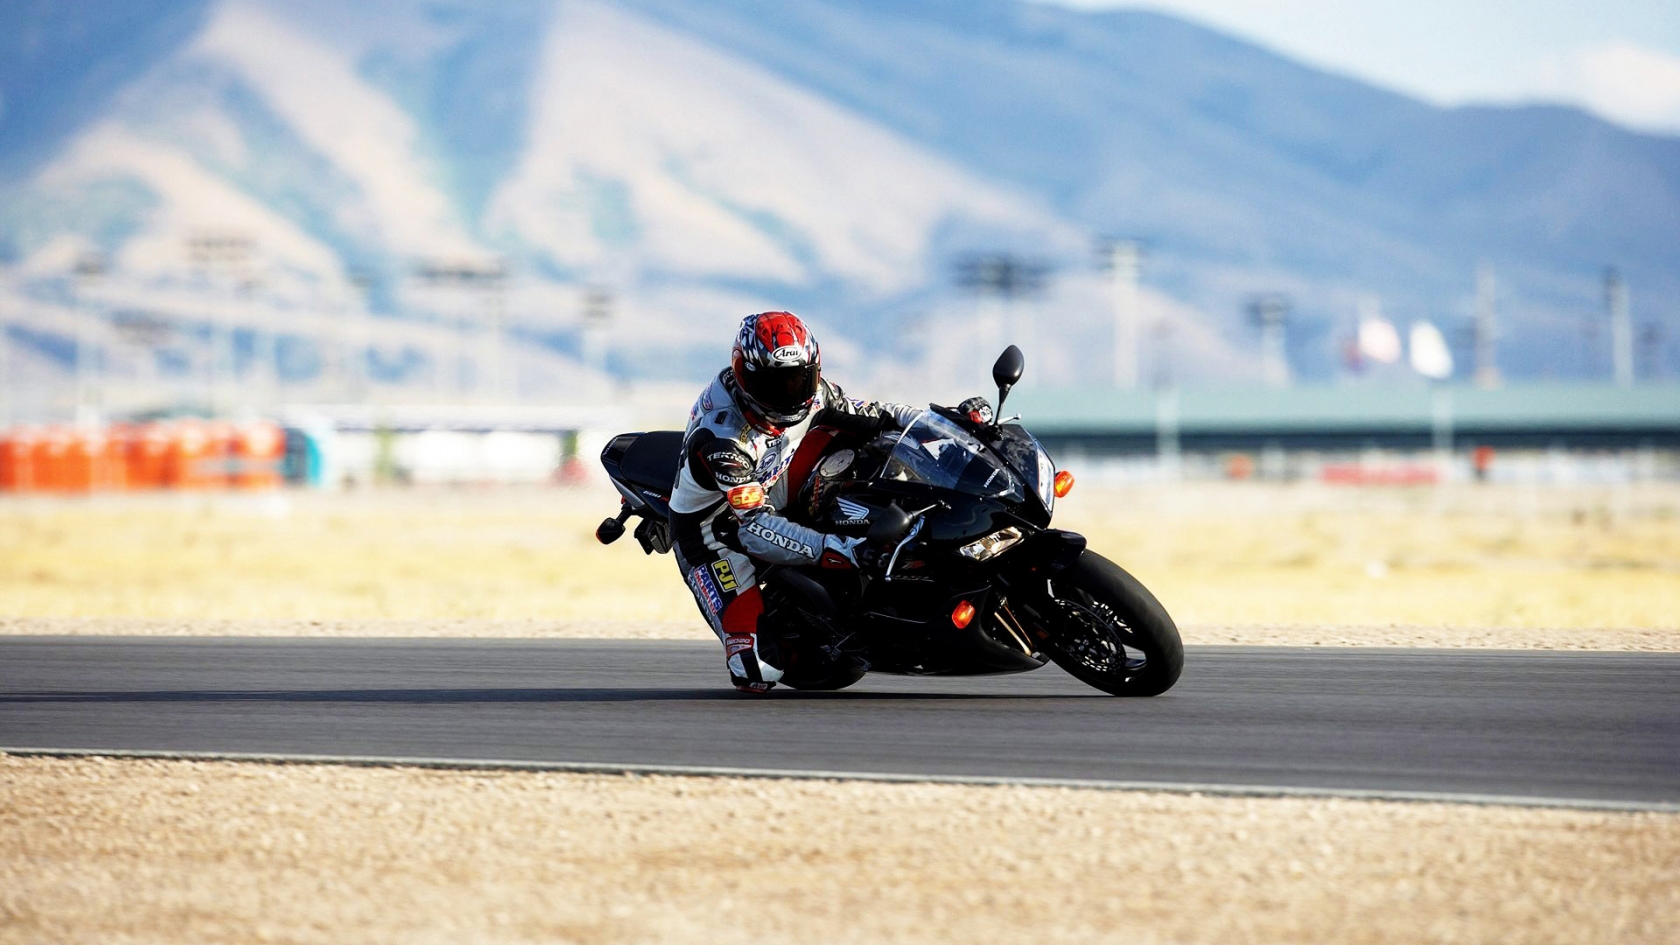 Moto Race for 1680 x 945 HDTV resolution